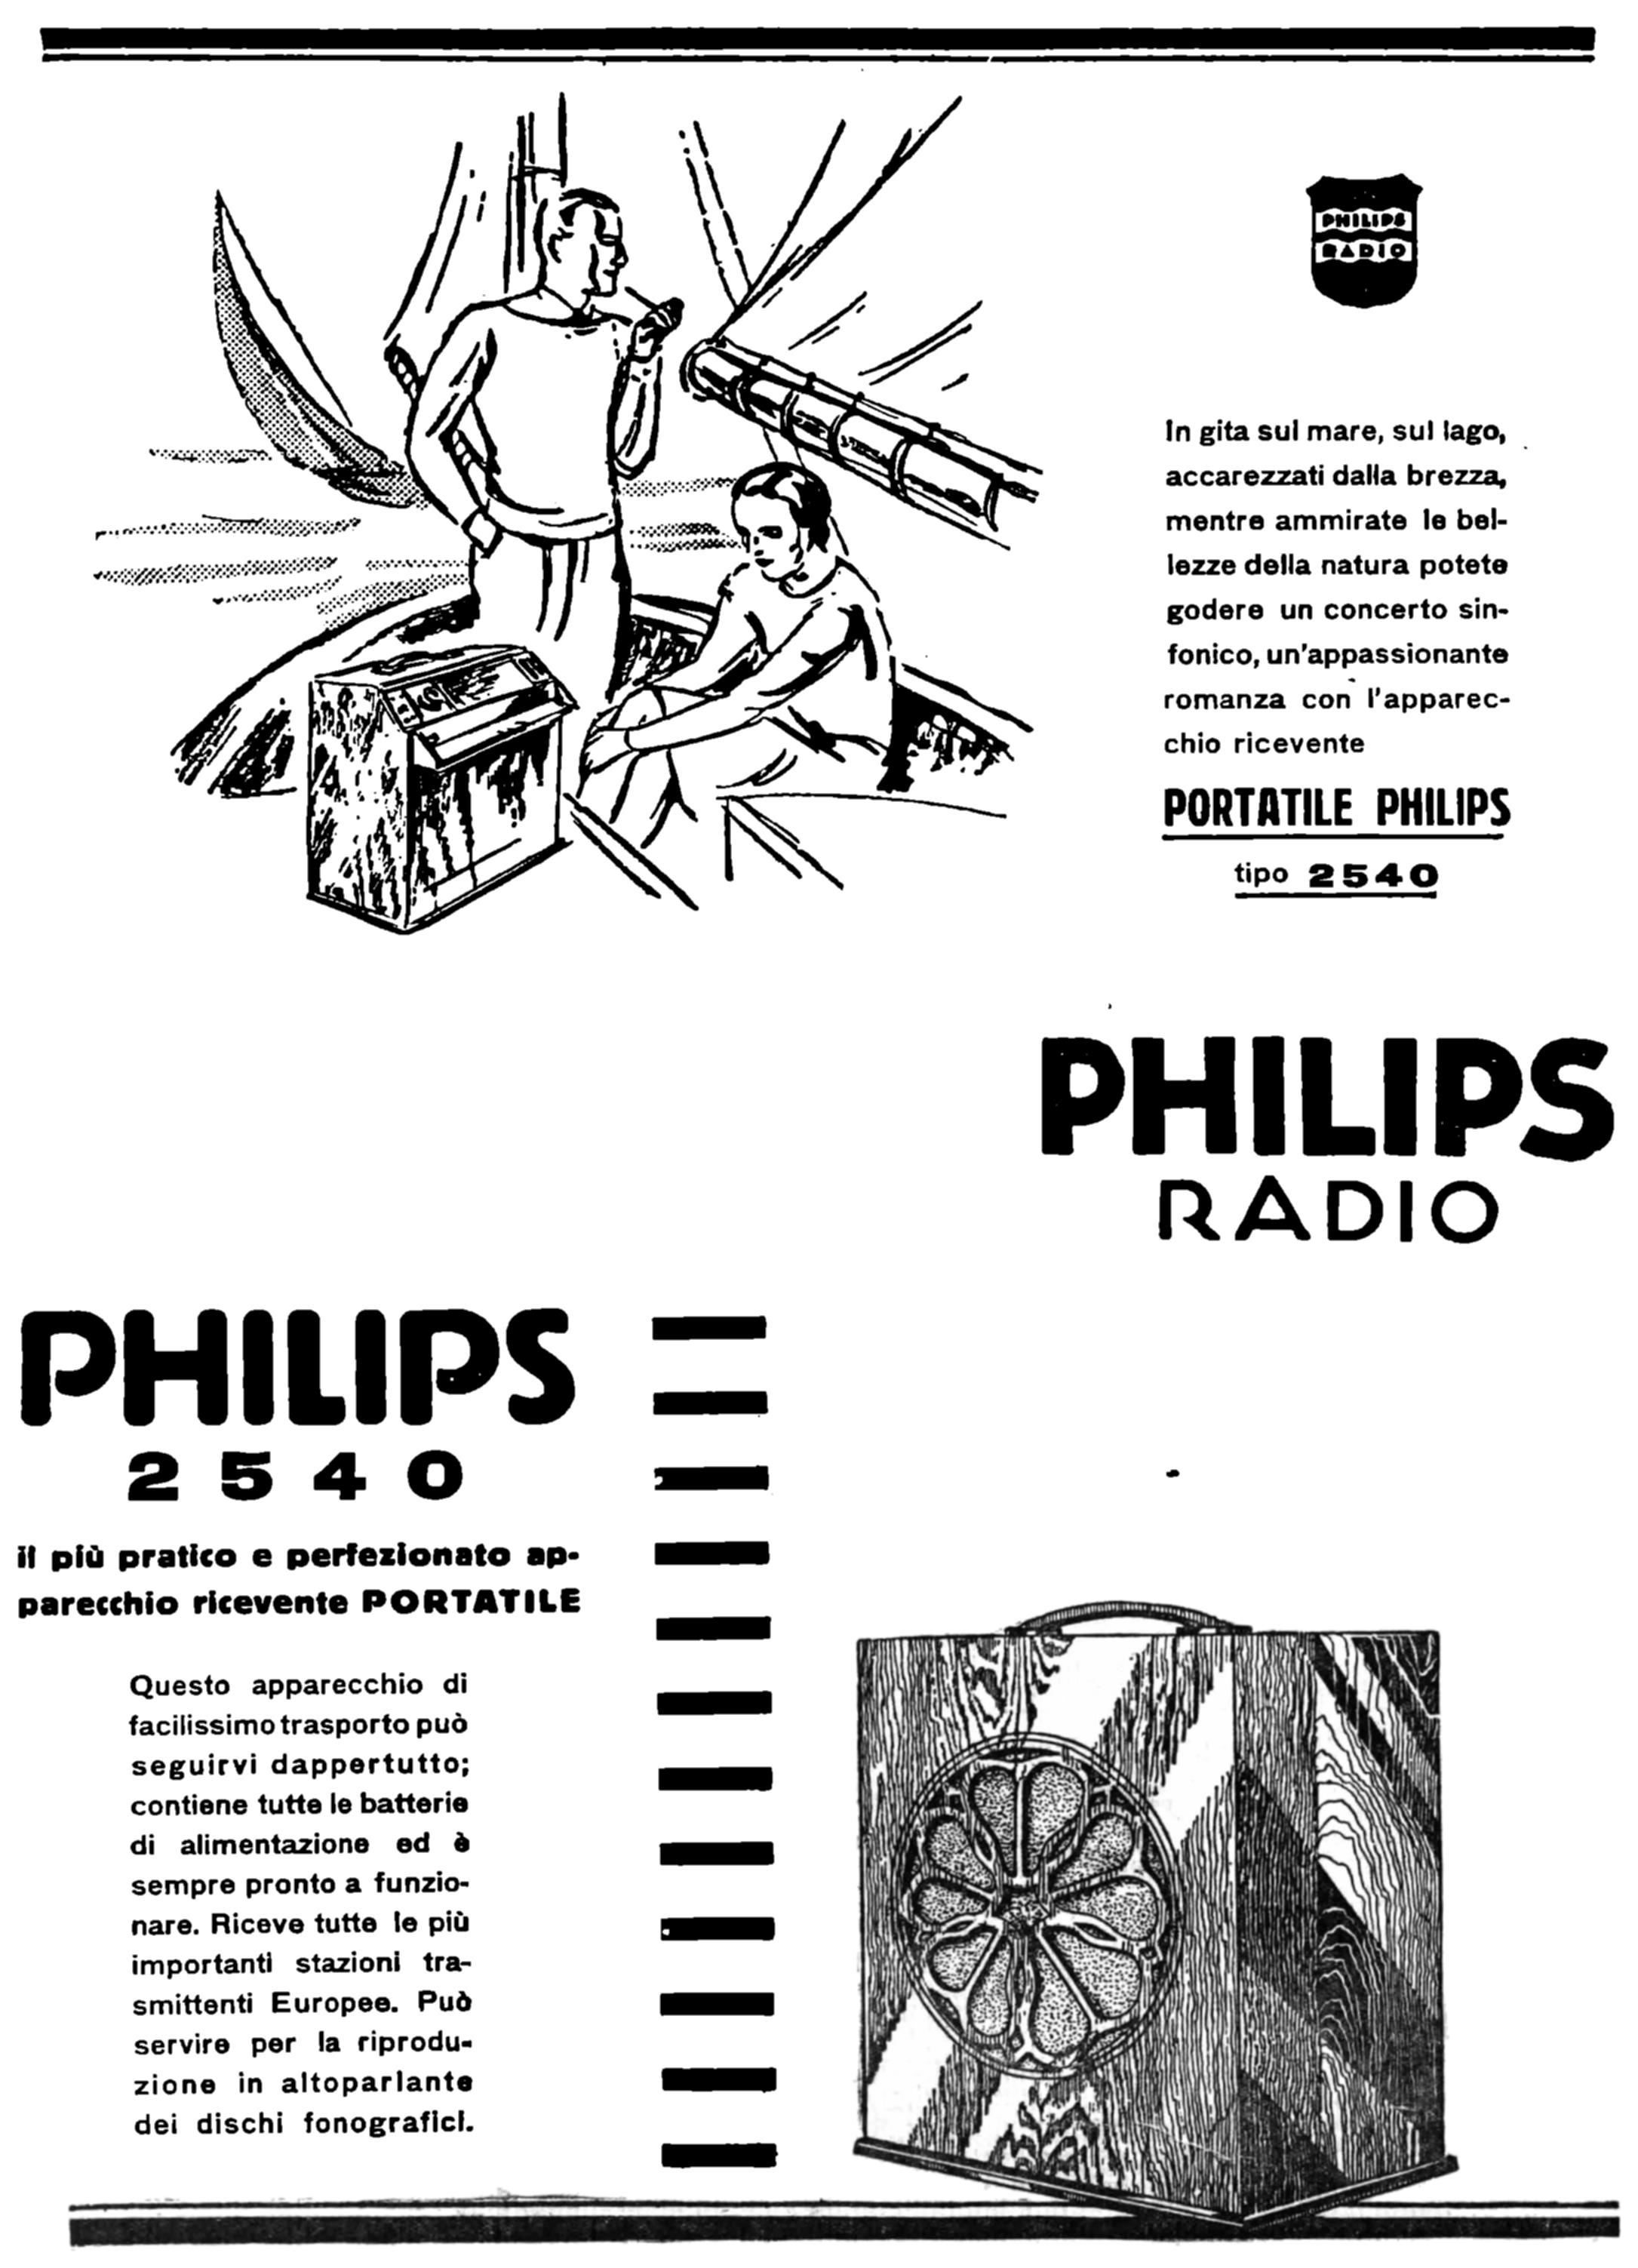 Philips 1930 216.jpg